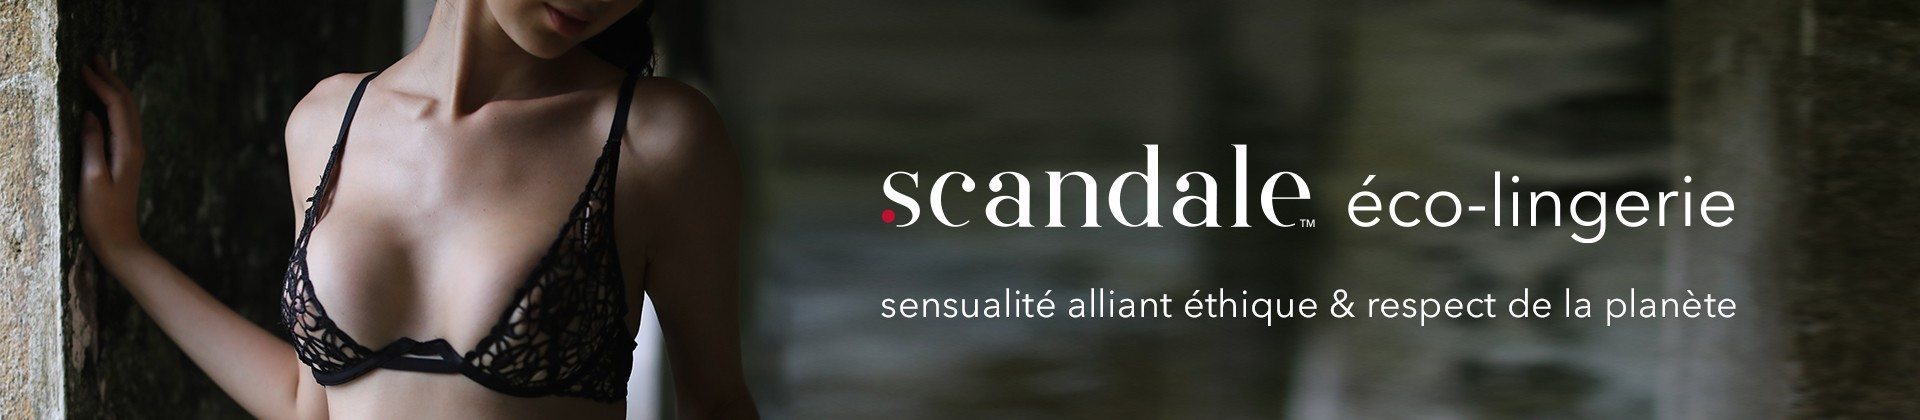 Scandale éco-lingerie